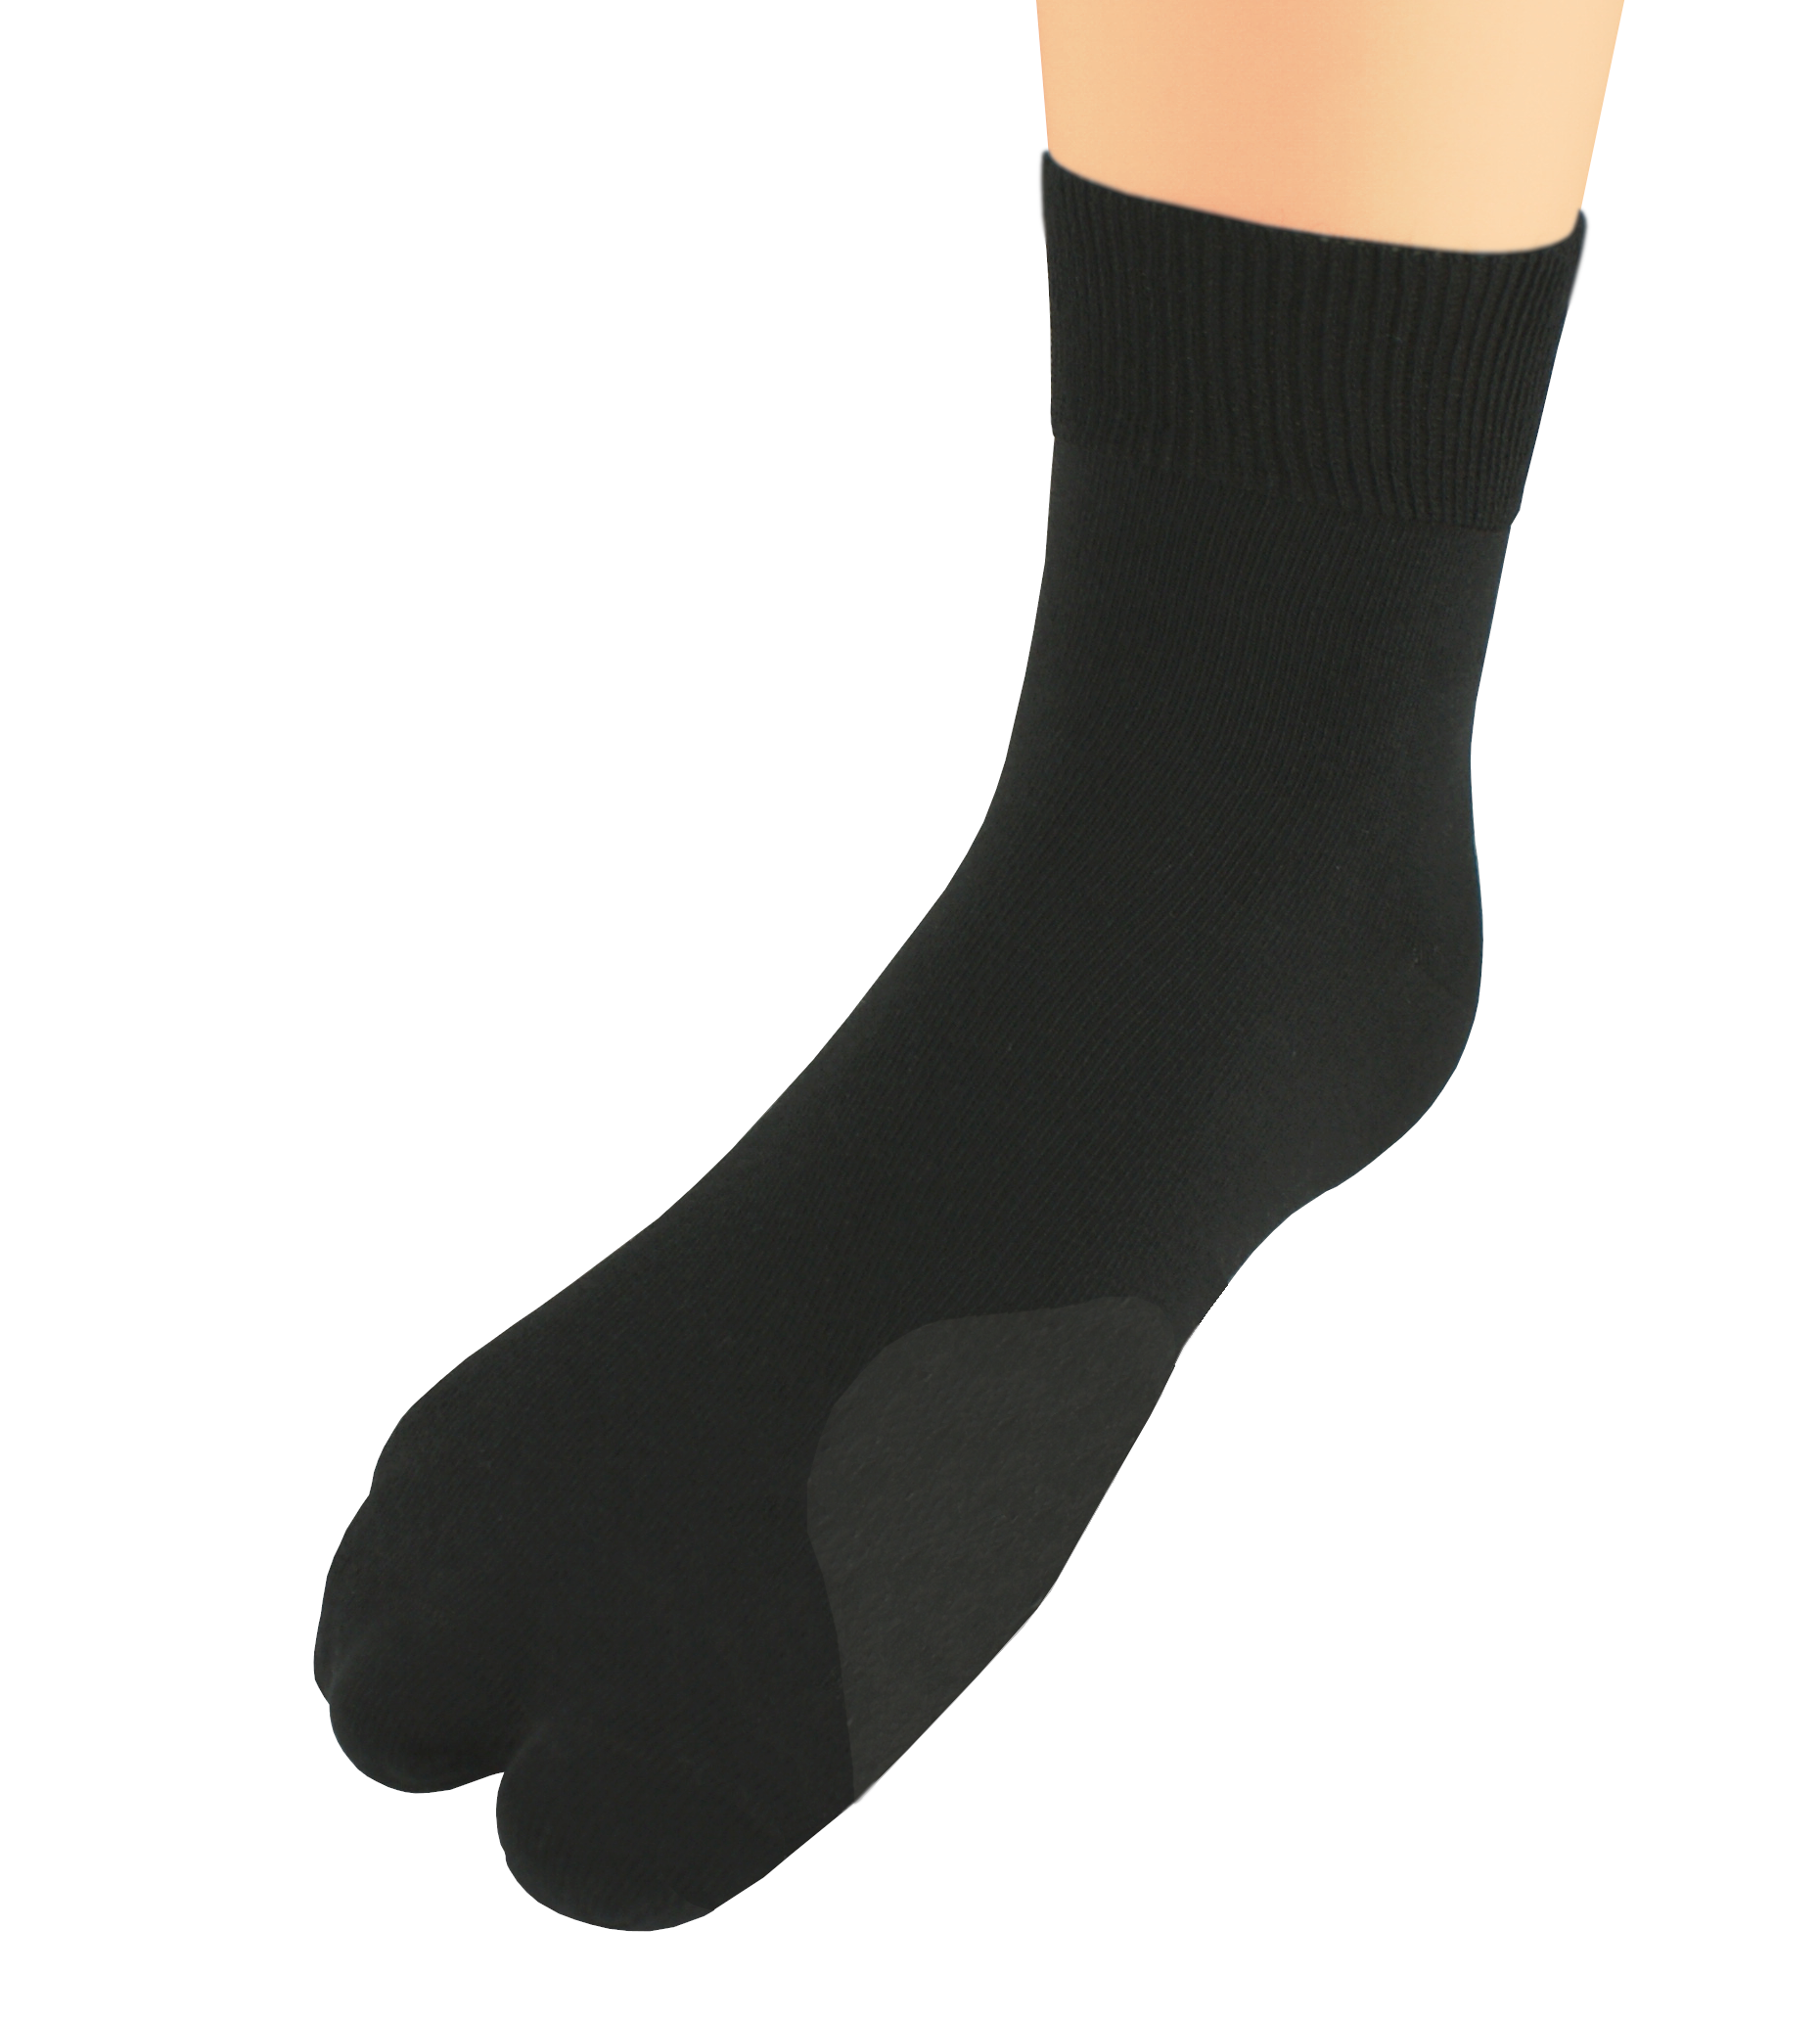 Bratex Woman's Socks Hallux